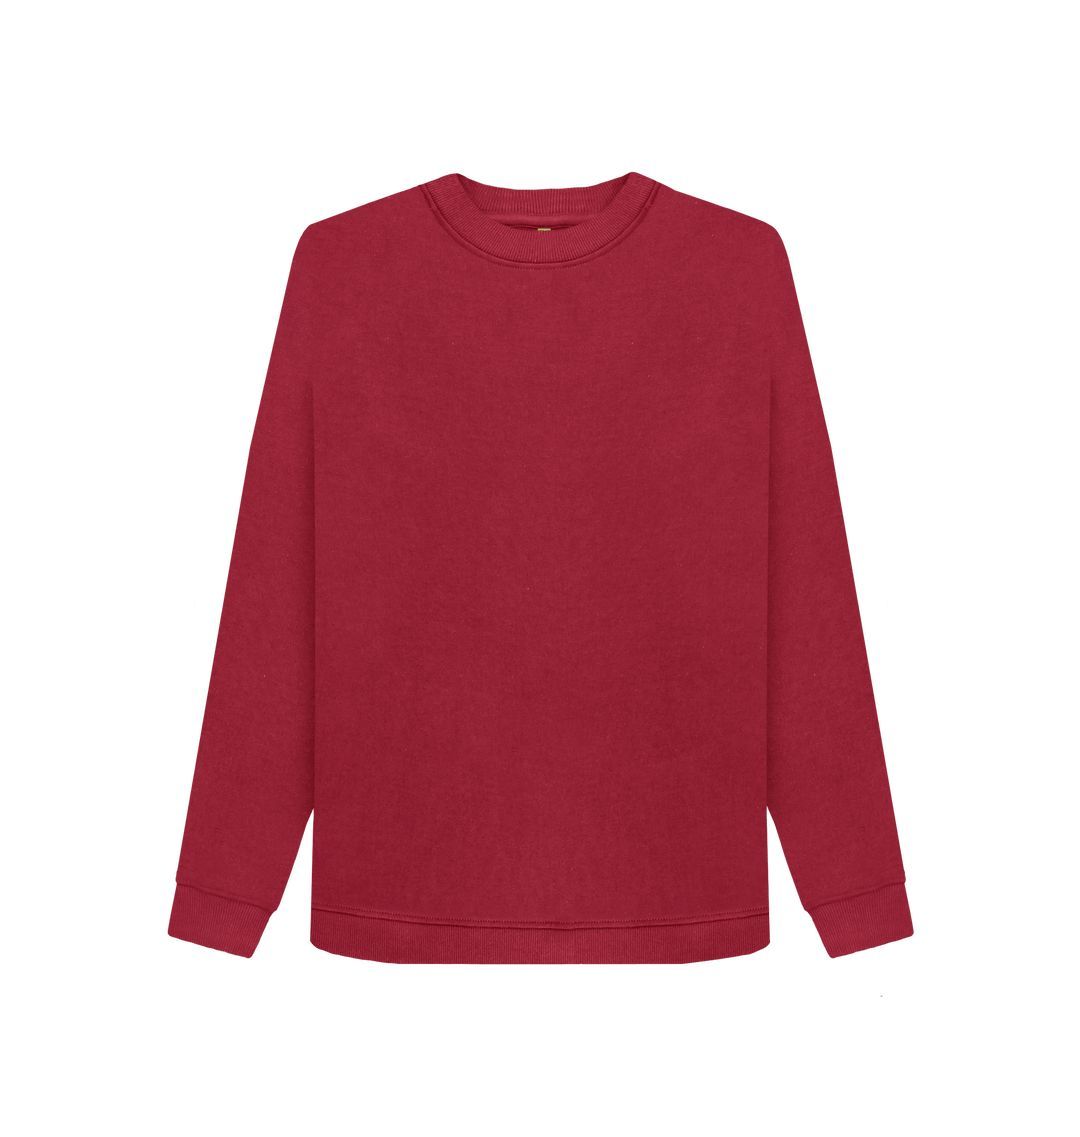 Cherry Women's organic cotton sweater